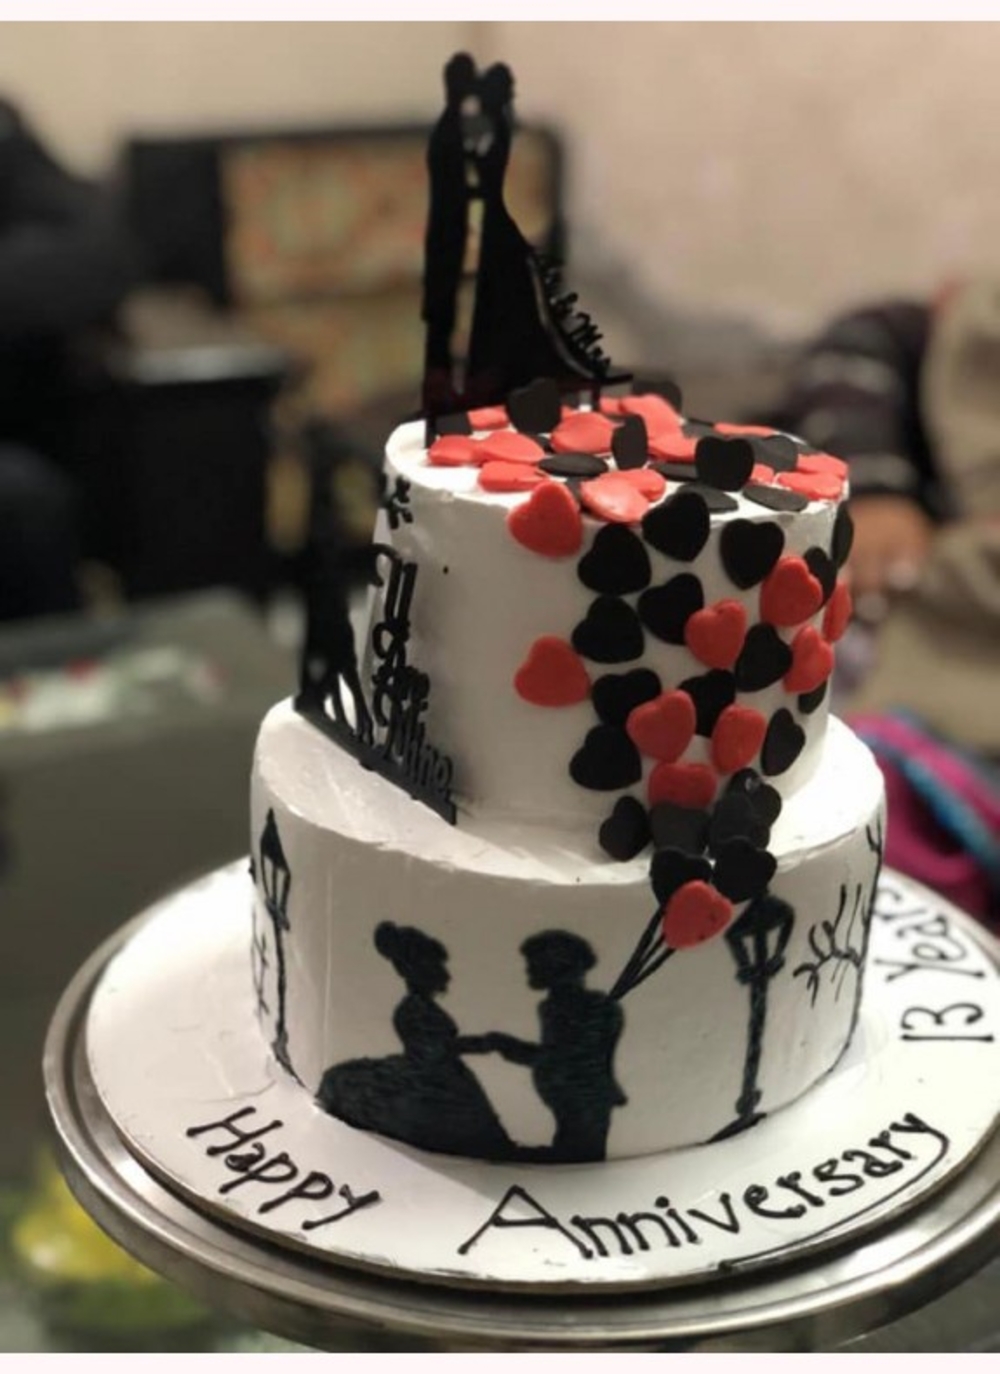 Layered Anniversary Cake